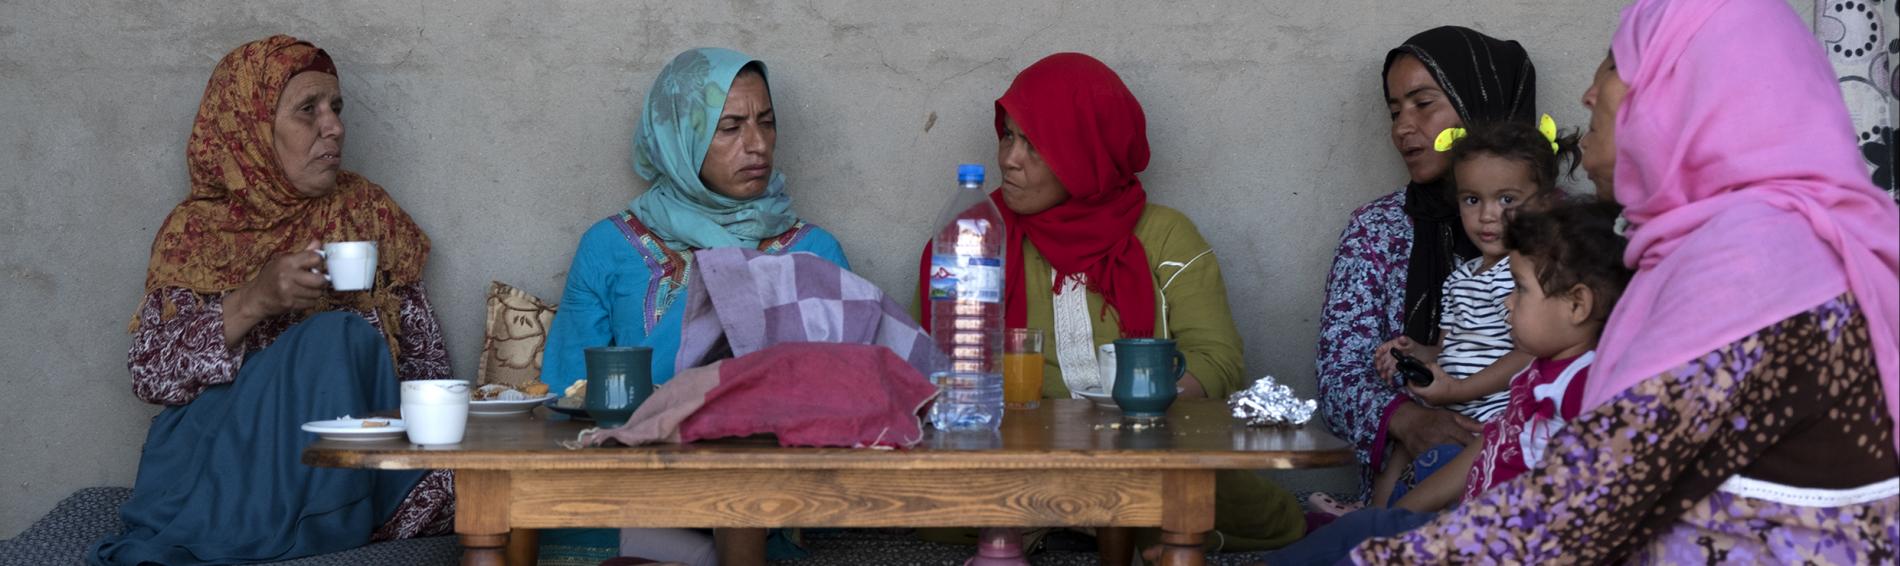 Vijf vrouwen van uiteenlopende leeftijden met kleurrijke hiqabs en jurken, een meisje met twee staartjes en een jongetje, zitten tegen een muur buiten een huis in Tunesië. Ze zitten op kussens rond een lage tafel waarop water, thee en koffie staat. 